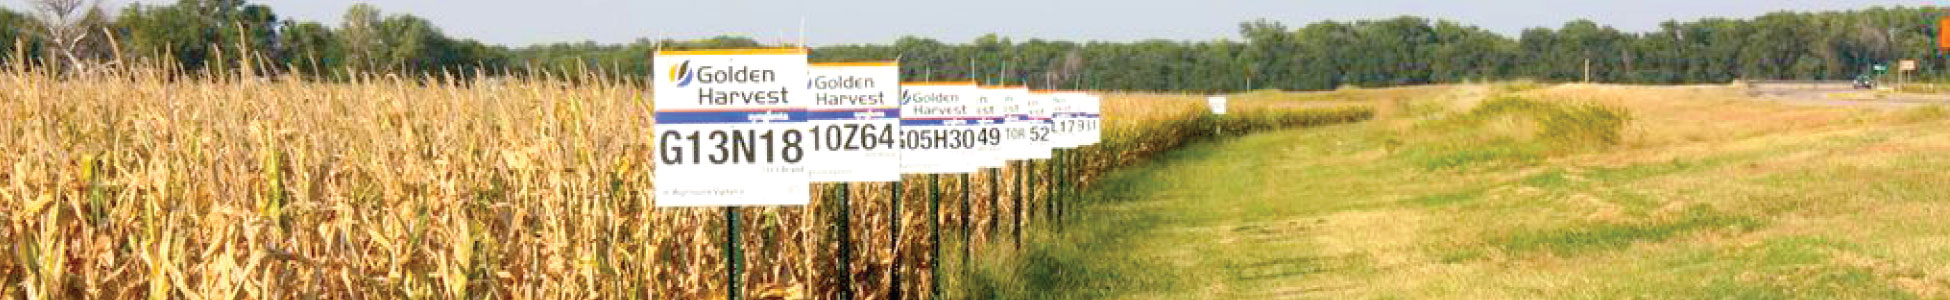 Golden Harvest Corn